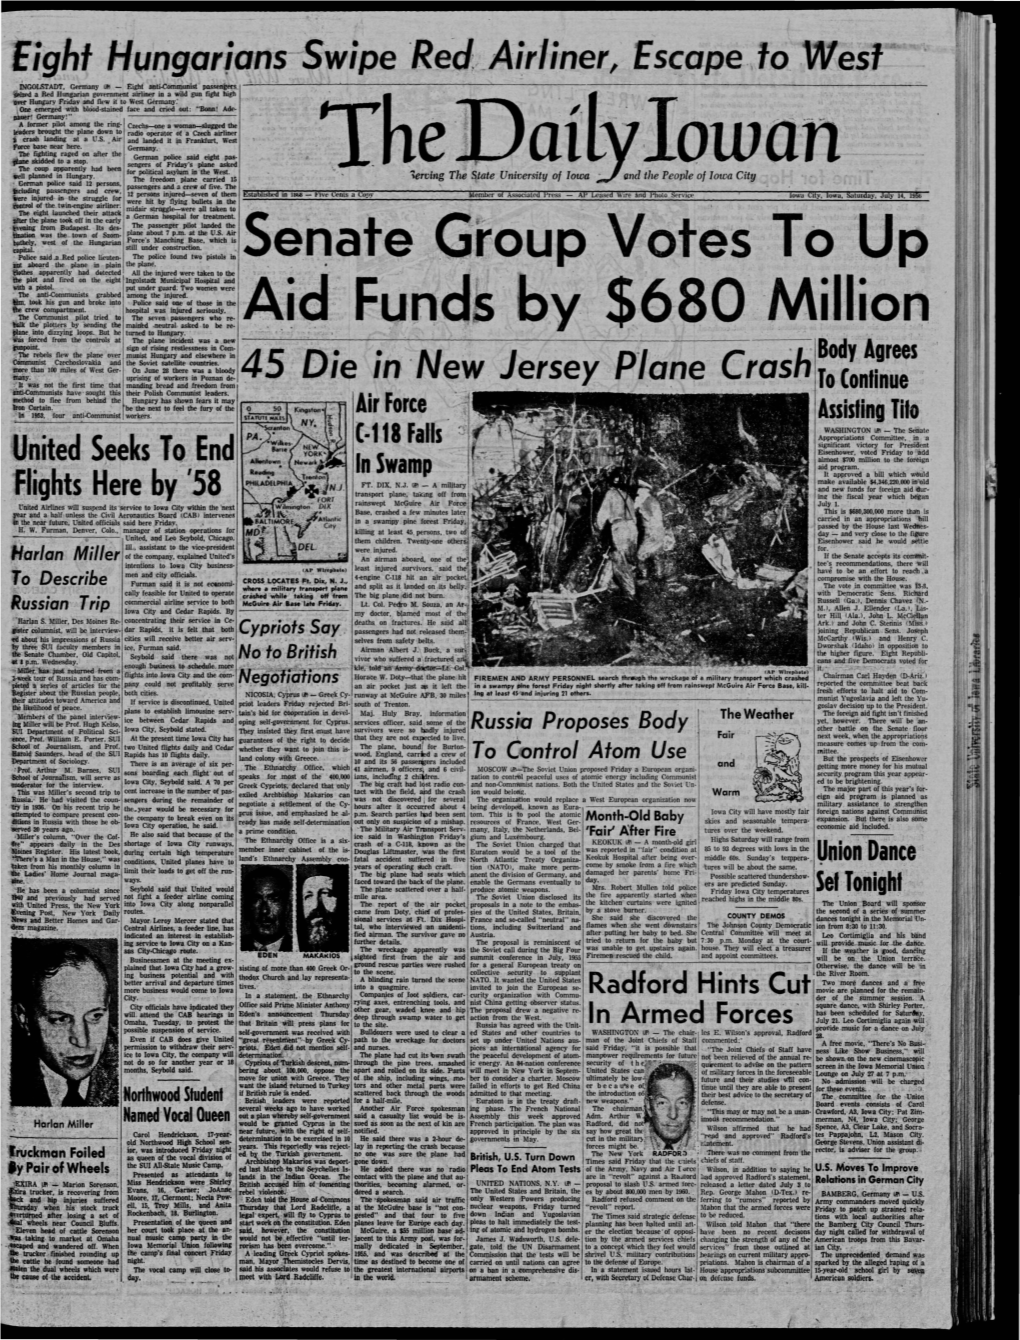 Daily Iowan (Iowa City, Iowa), 1956-07-14